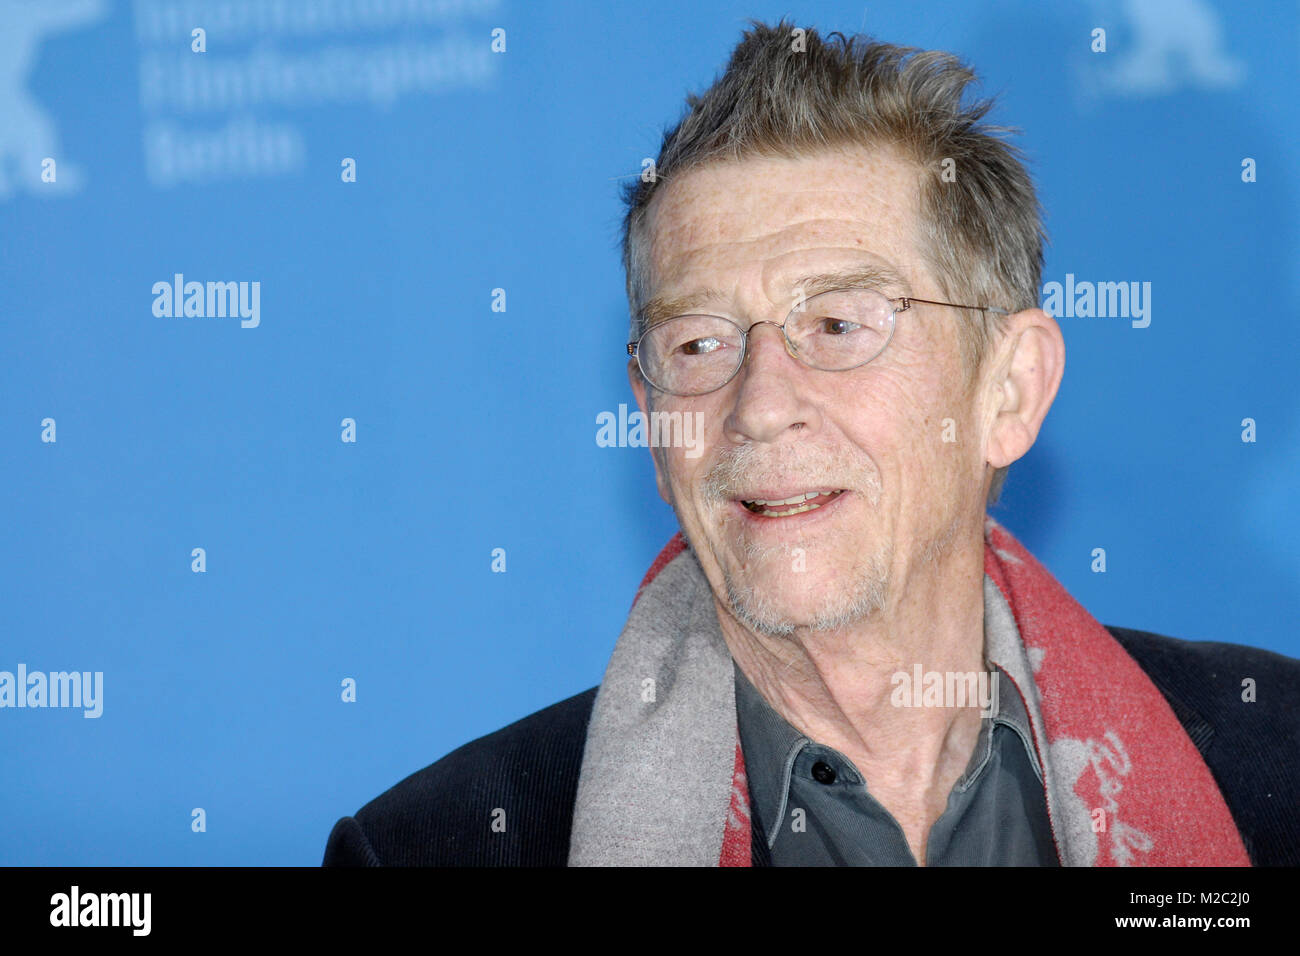 Schauspieler John Hurt beim Fotocall zum Film 'An Englishman in New York' im Rahmen der 59. Berlinale am 11.02.2009 / Foto: niehaus Stock Photo